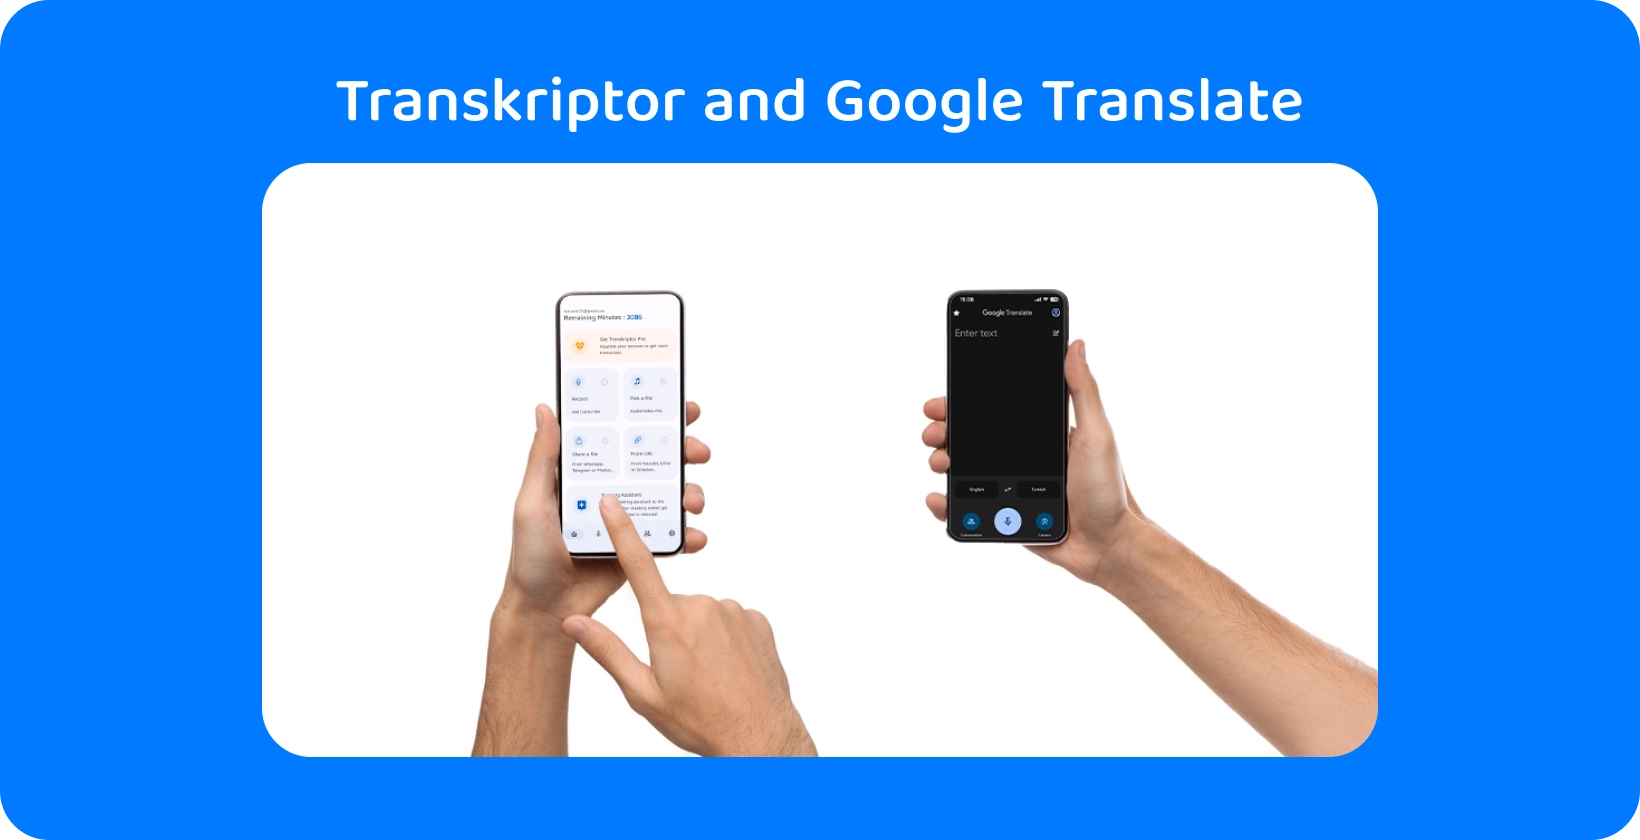 Transkriptor और Google अनुवाद के साथ स्मार्टफोन पकड़े हुए दो हाथ, ऑडियो ट्रांसक्रिप्शन और अनुवाद का प्रदर्शन करते हैं।